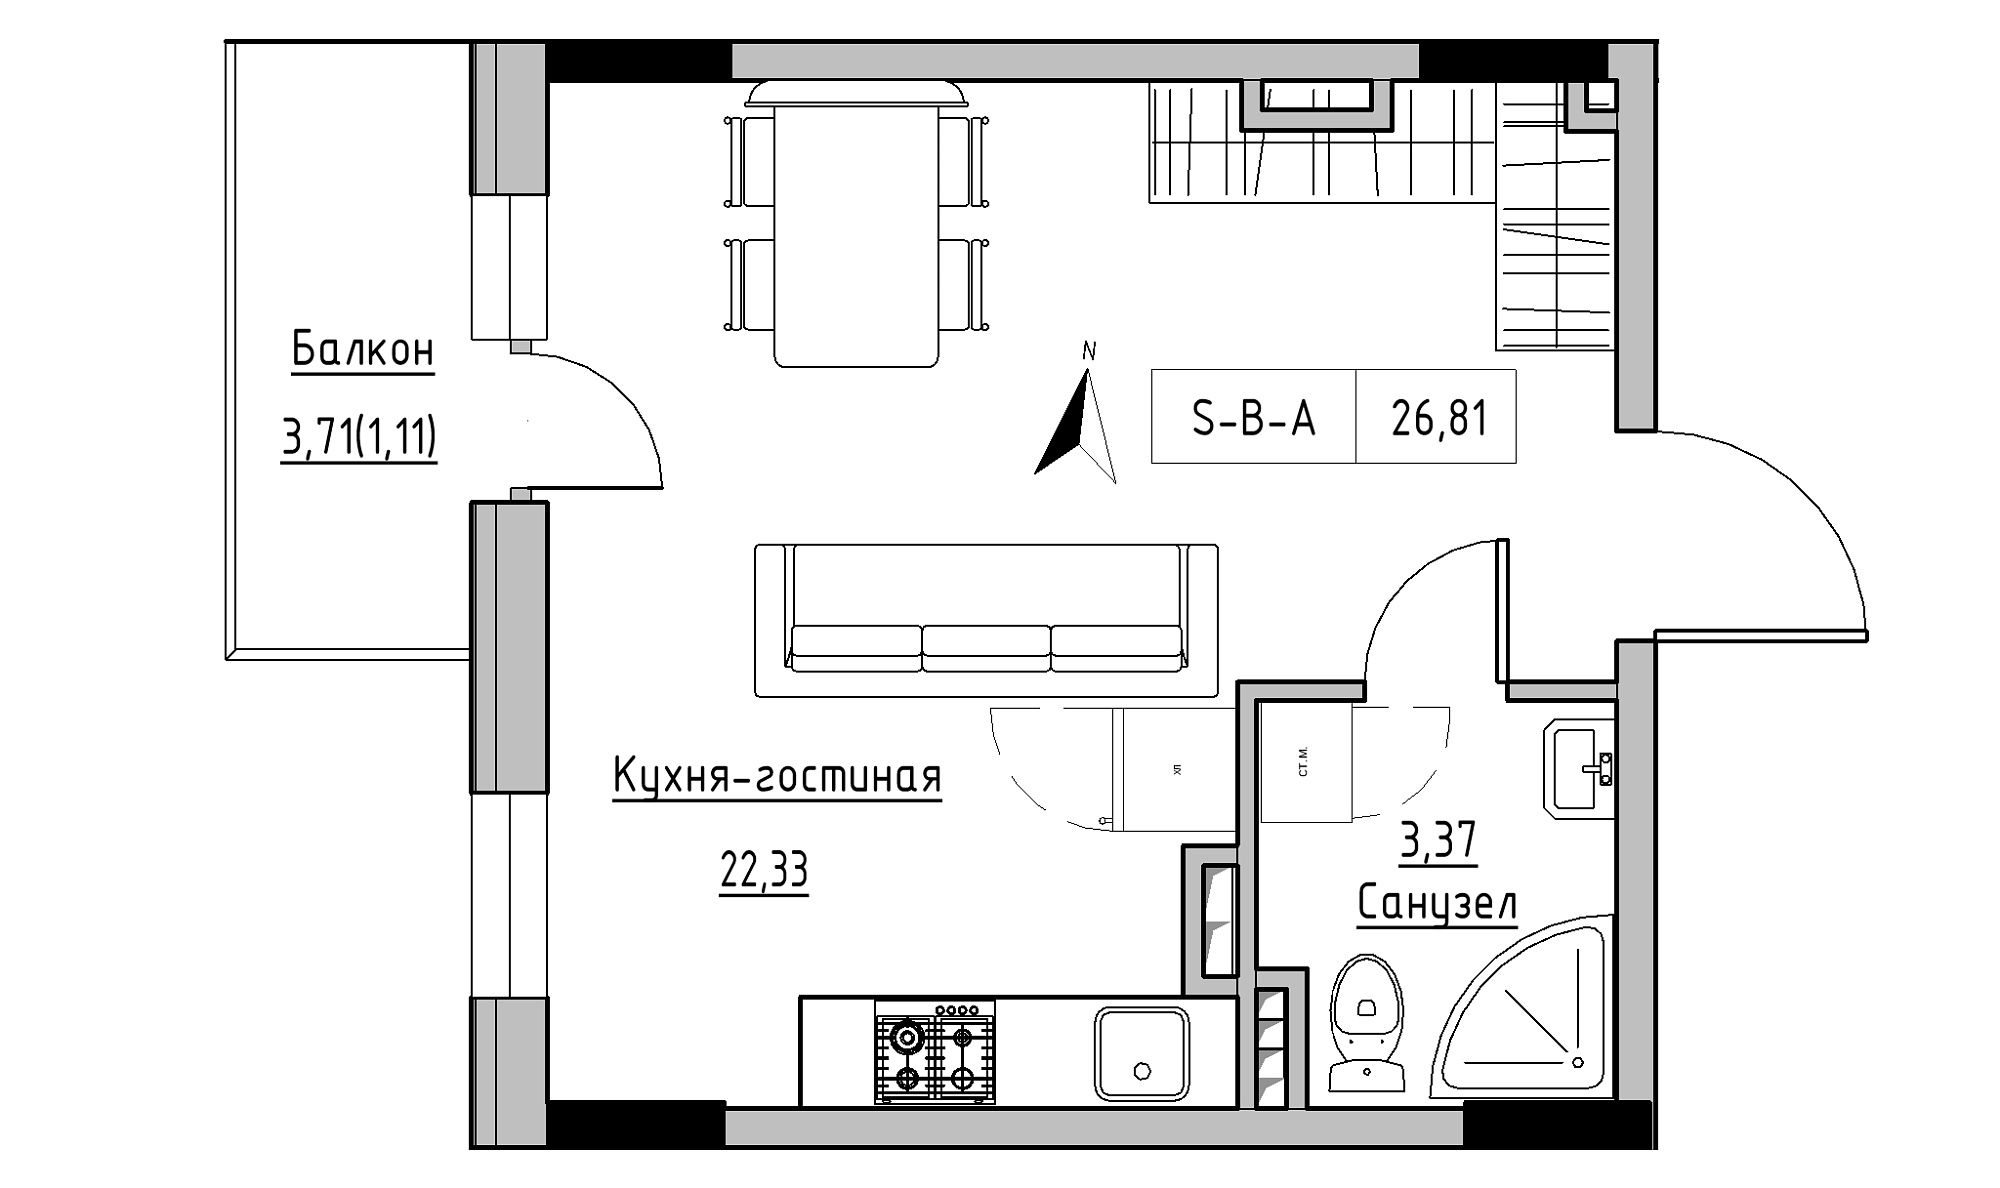 Планування 1-к квартира площею 26.4м2, KS-025-03/0005.